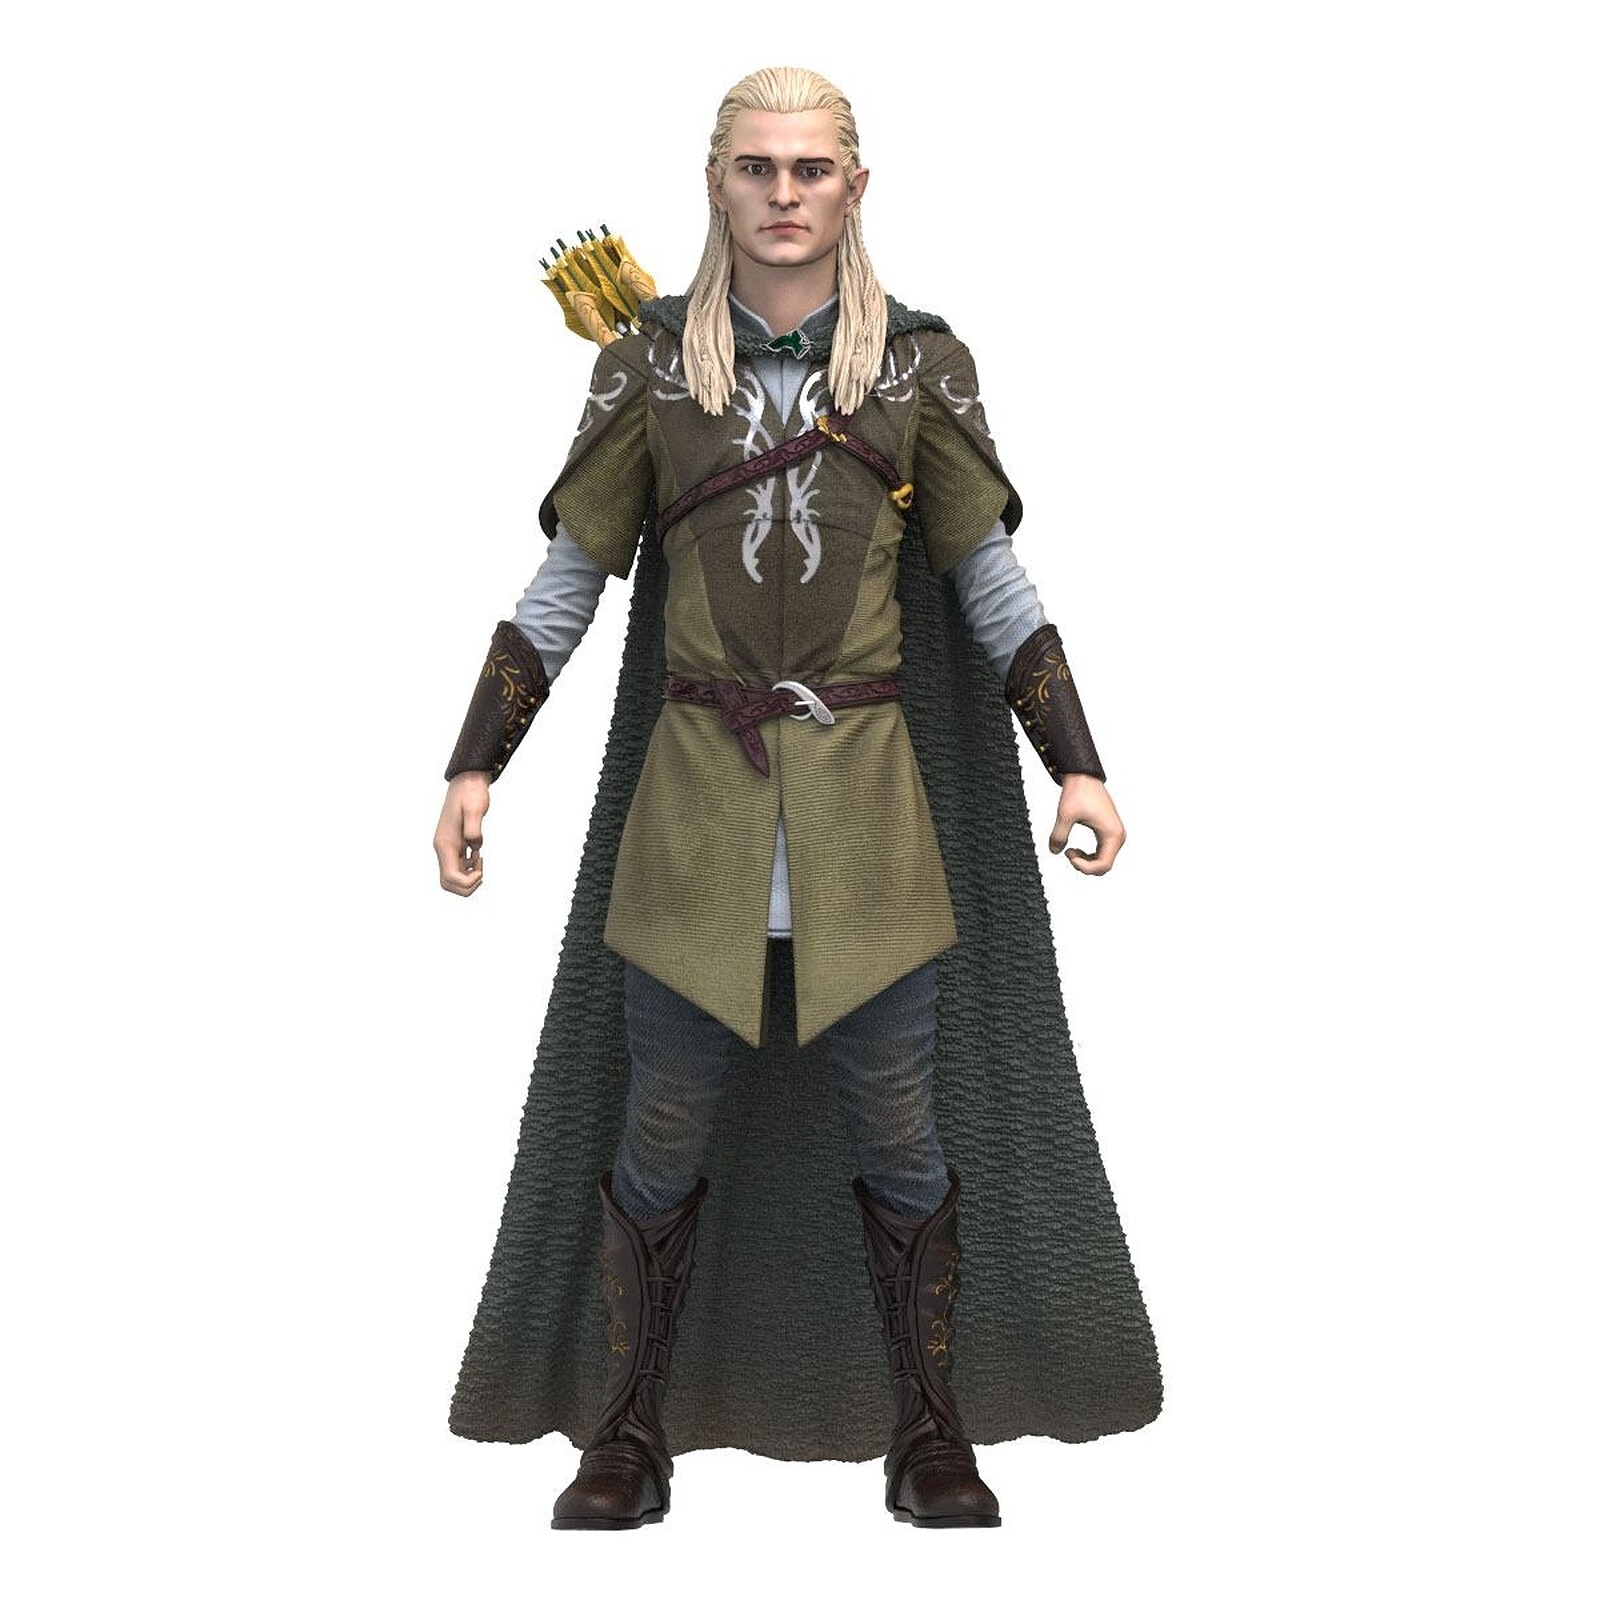 Le Seigneur des Anneaux - Figurine POP! King Aragorn 9 cm